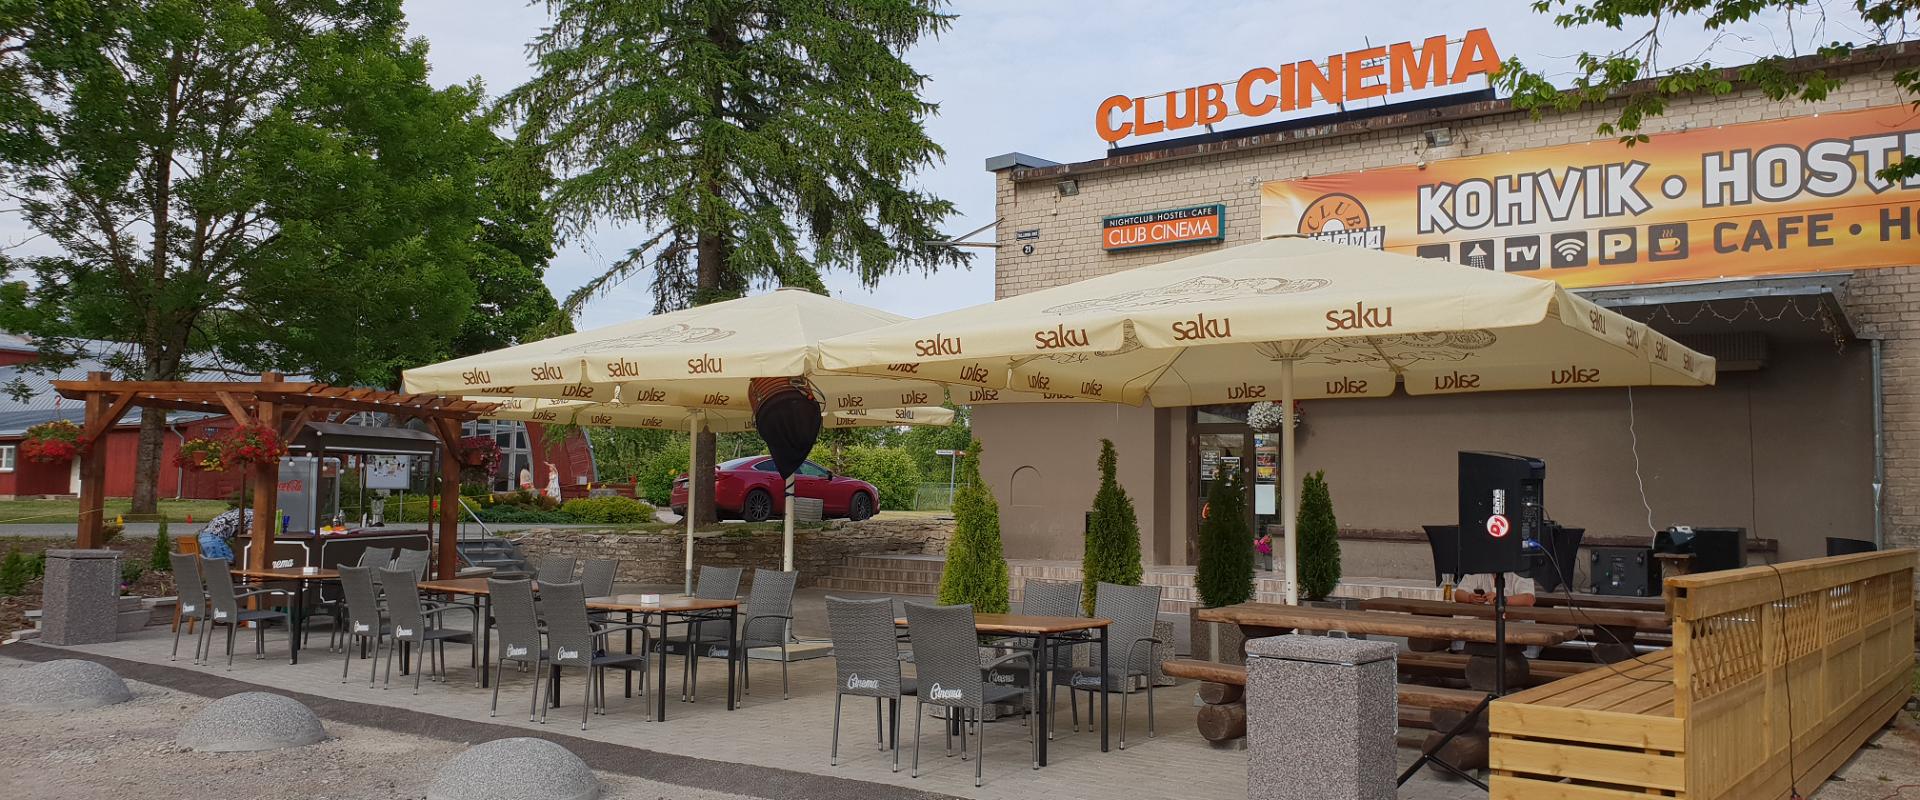 Ööklubi Club Cinema